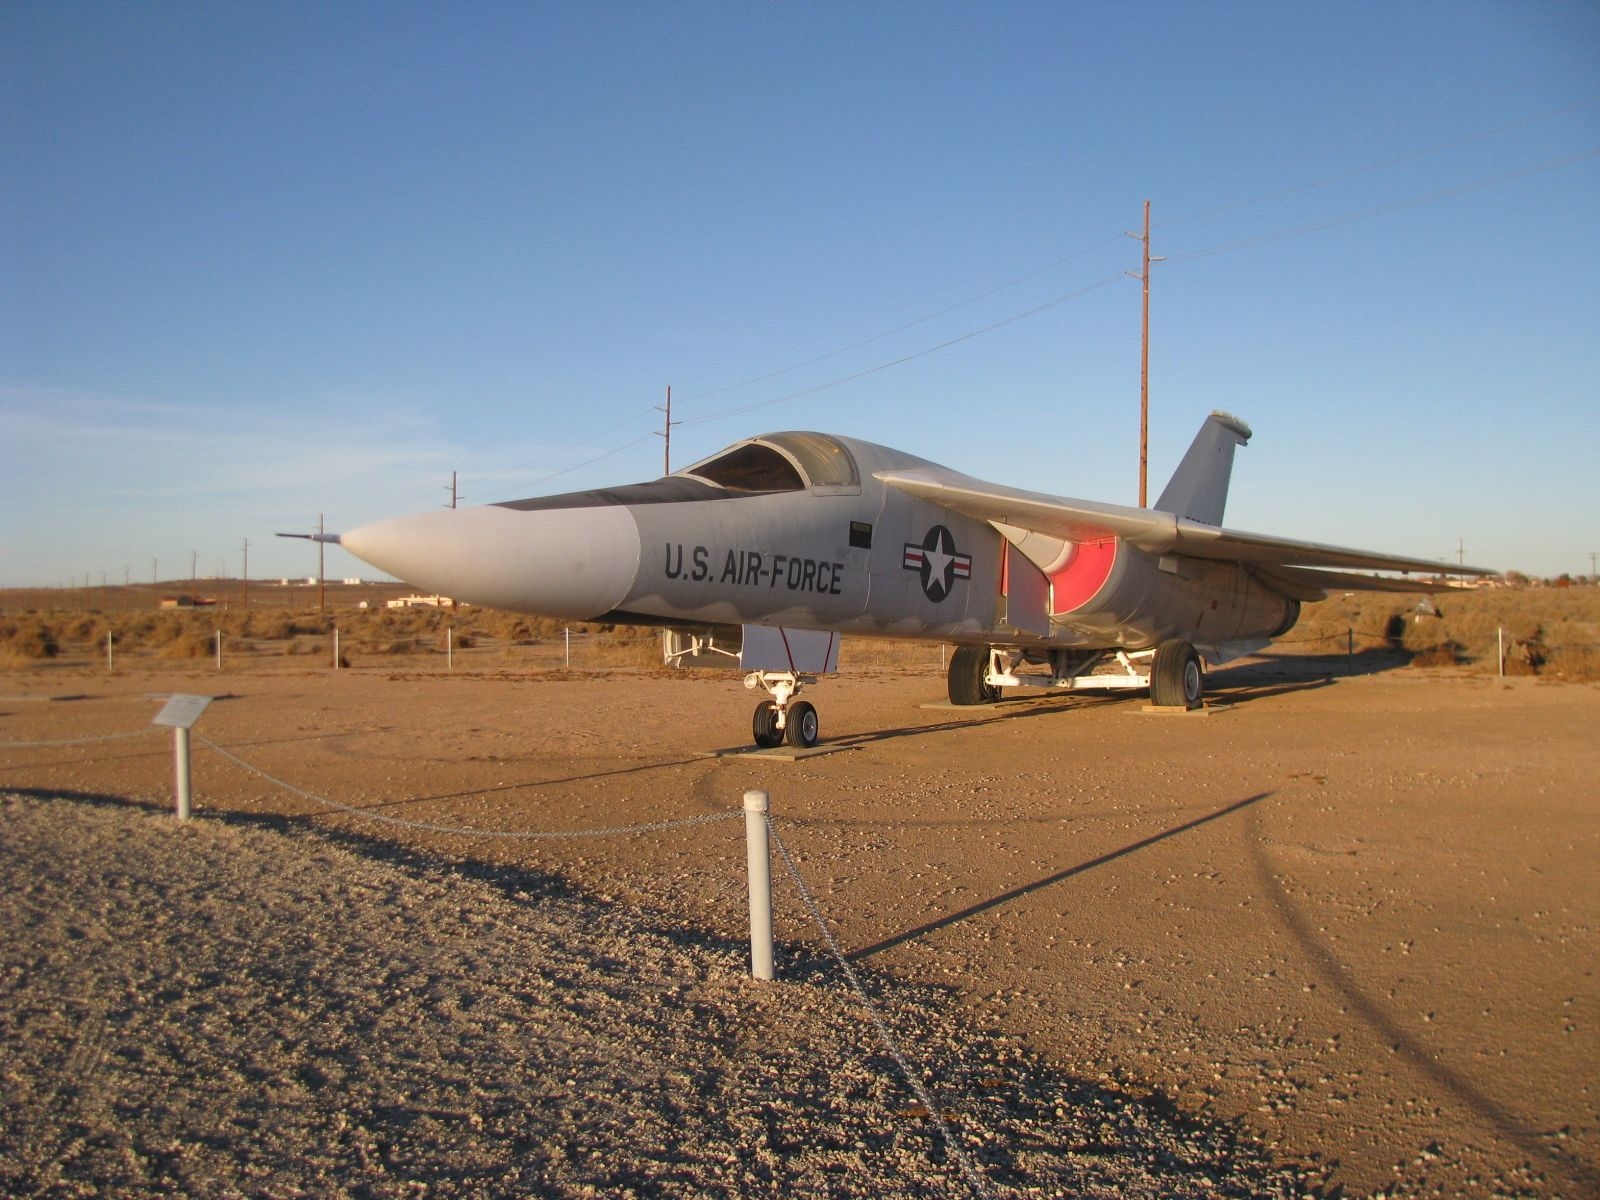 F-111A - "Aardvark"